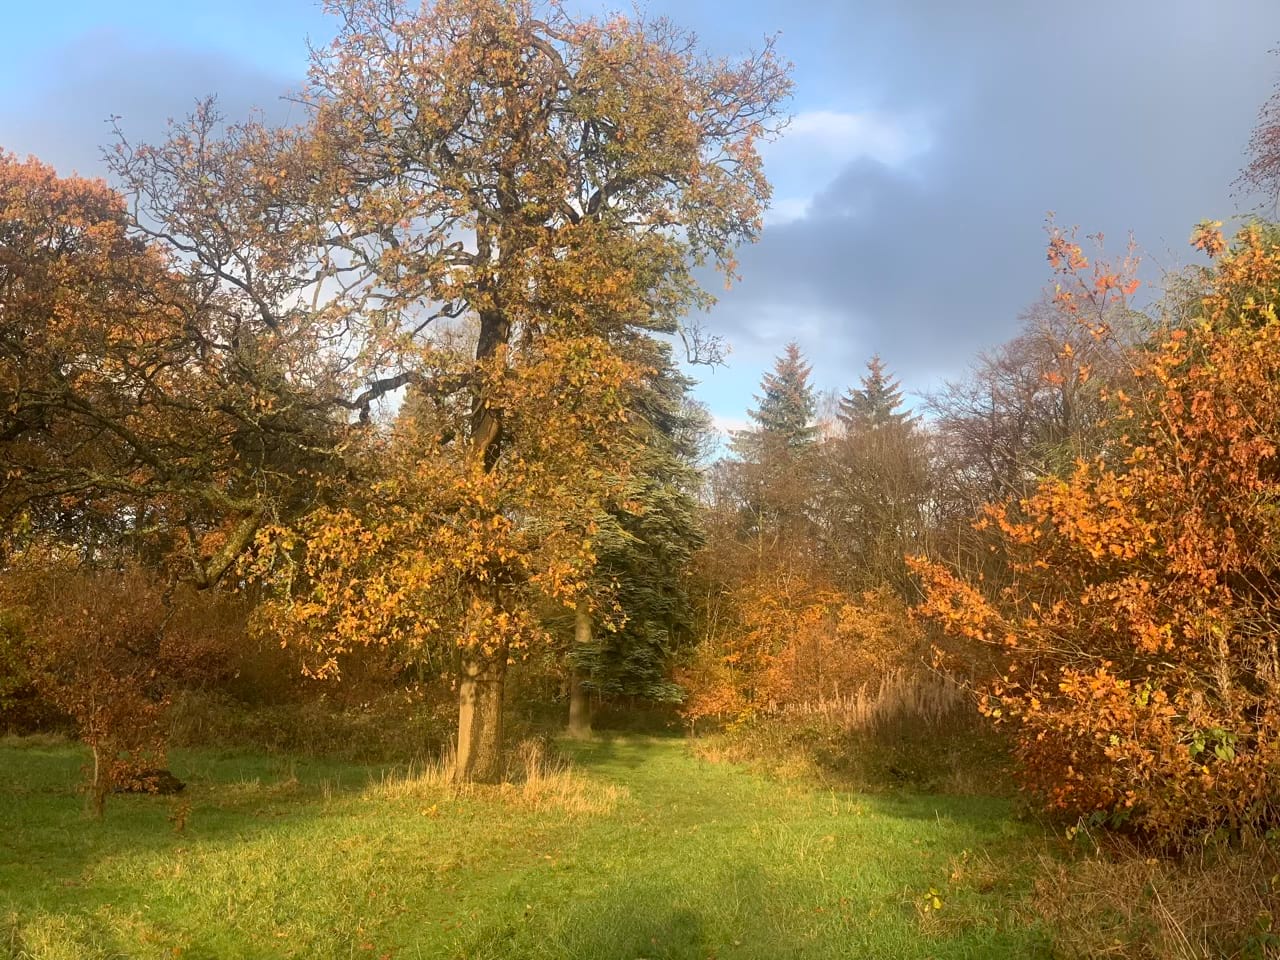 Autumn oak in sunlight, dark clouds. 